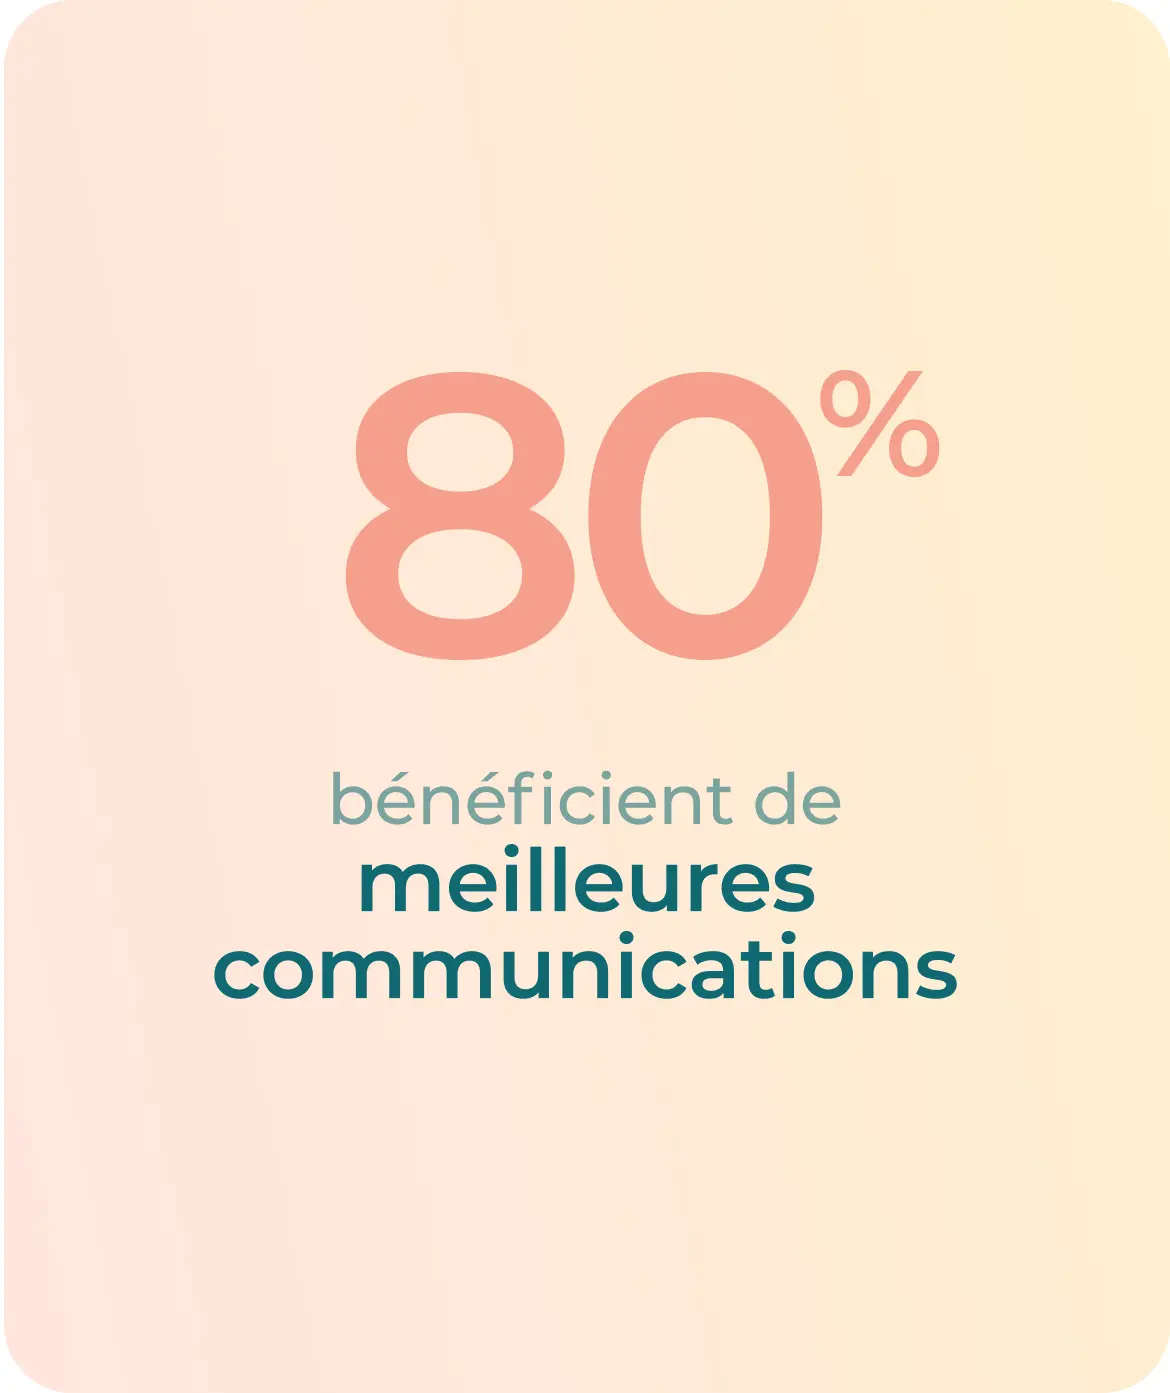 80% bénéficient de meilleures communications